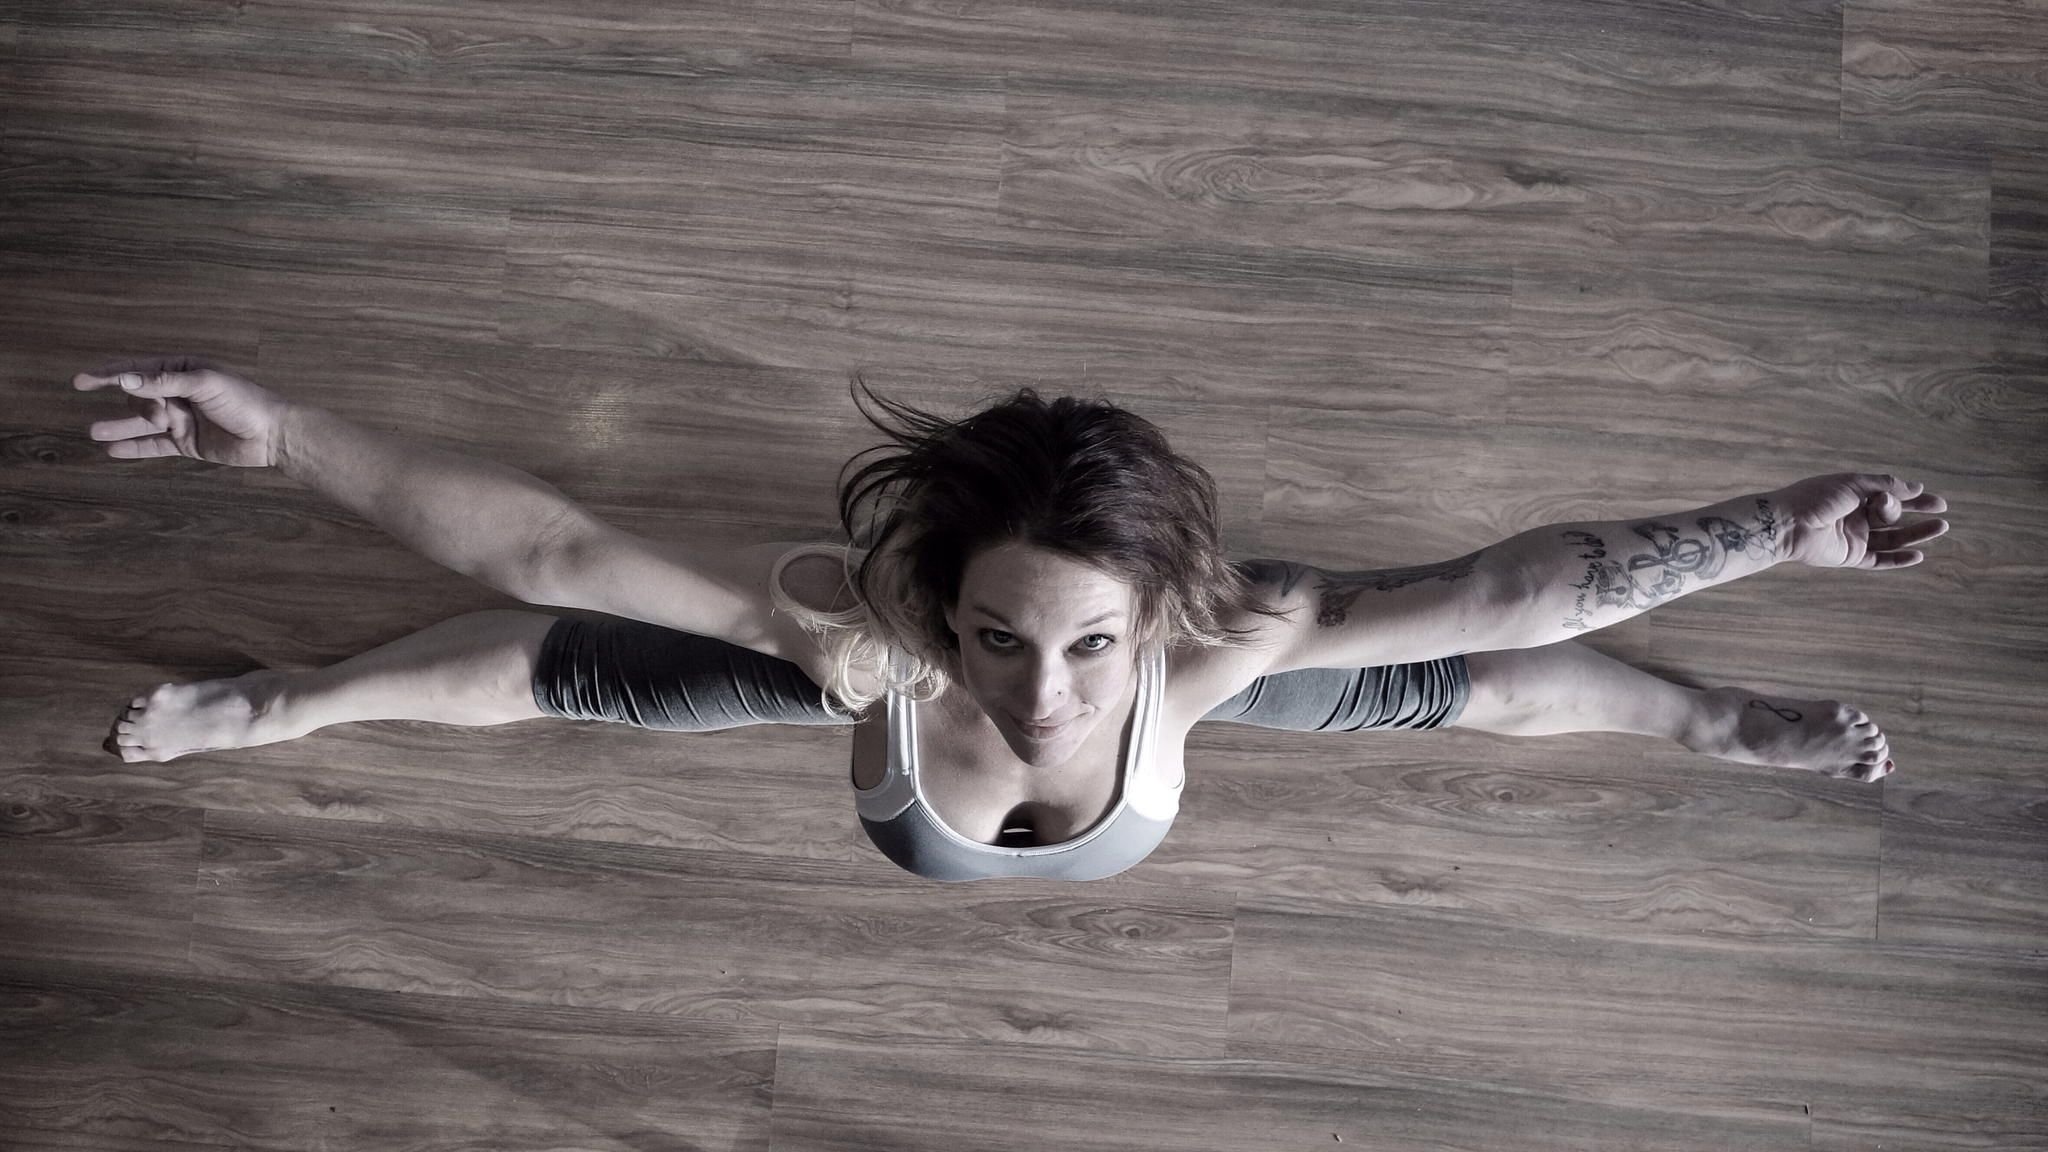 Гибкая гимнастка с короткой стрижкой снимает прозрачное одеяние